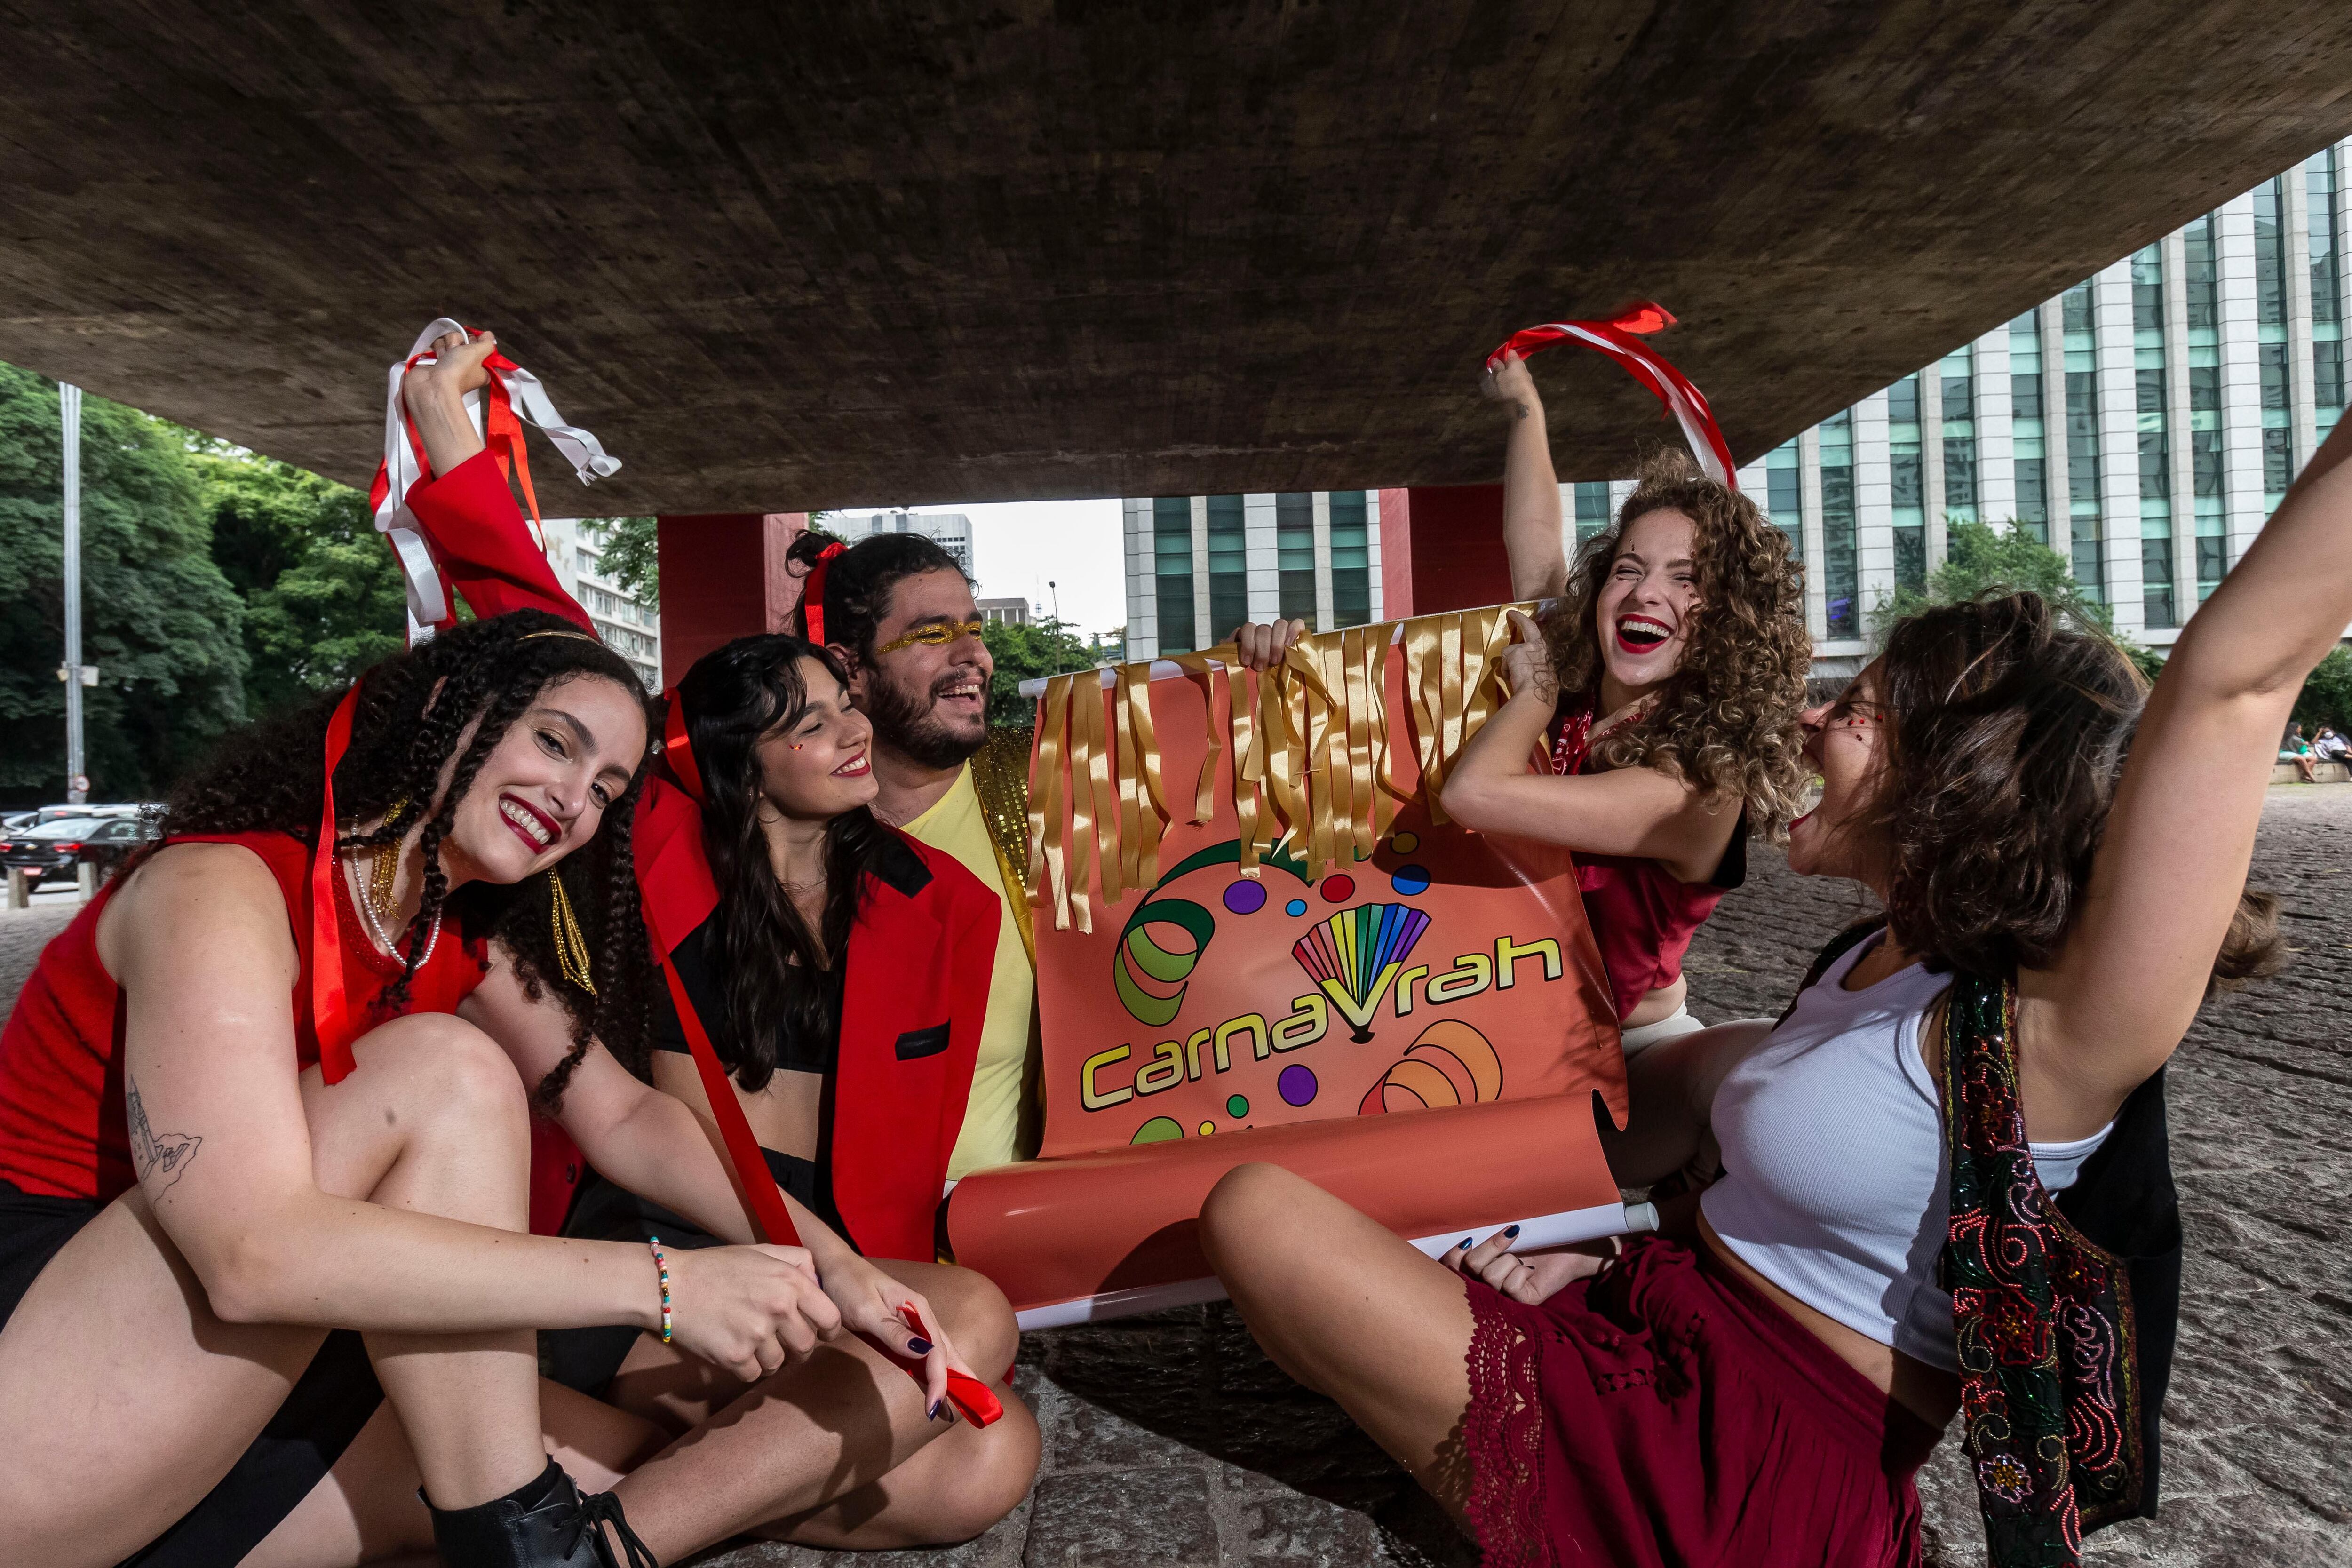 Berrini vai receber desfile de blocos de carnaval em São Paulo – Metro  World News Brasil